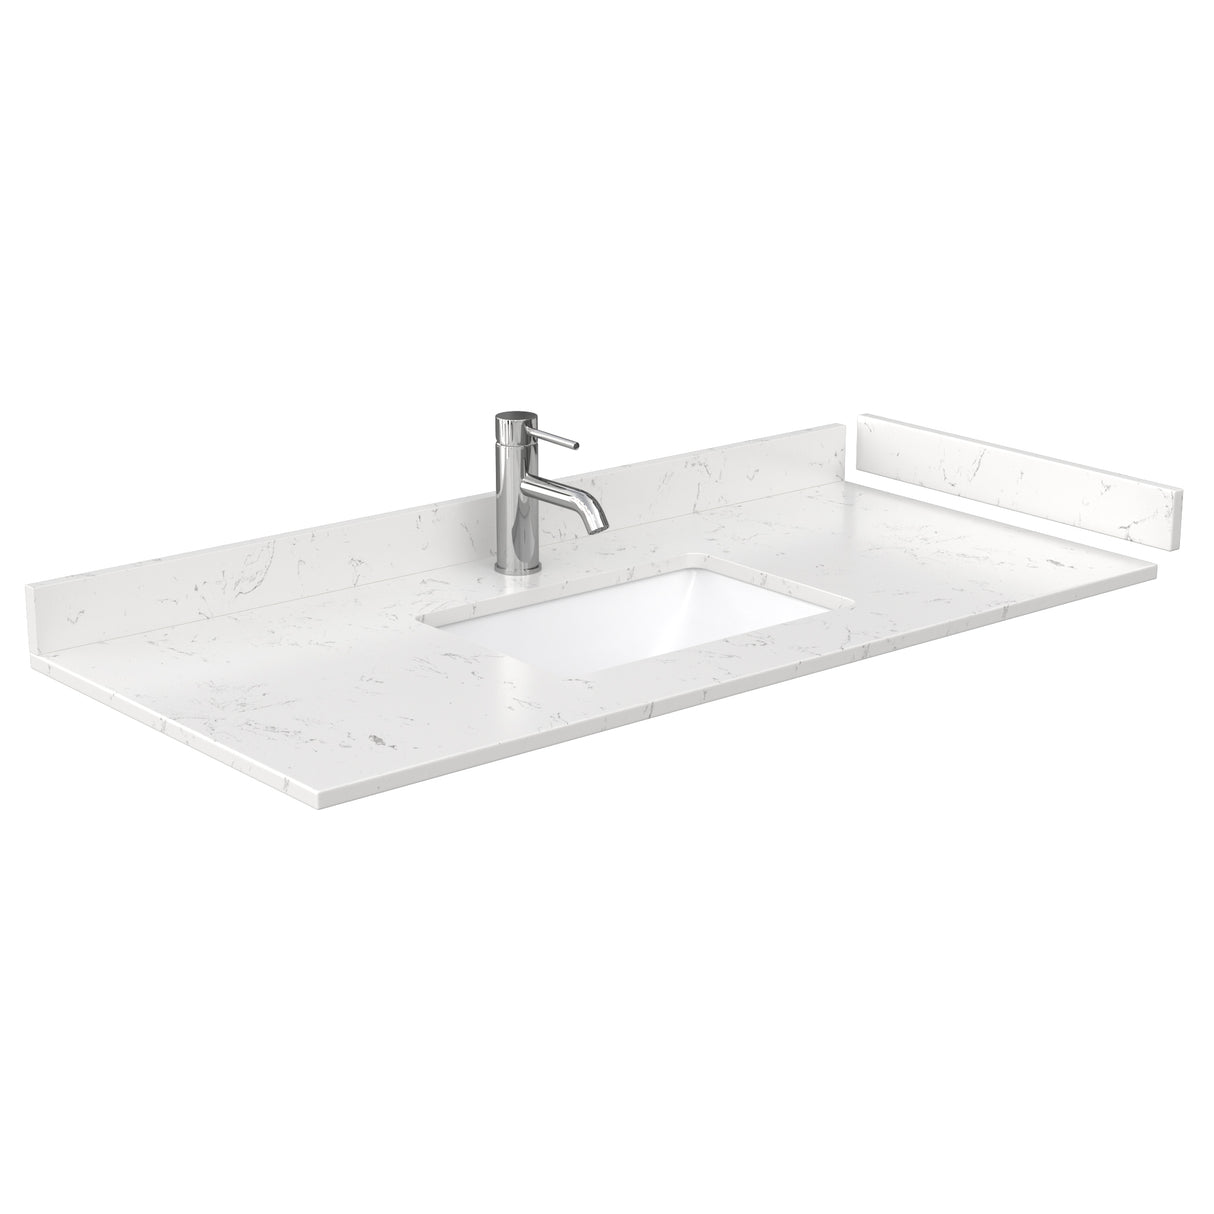 Deborah 48 Inch Single Bathroom Vanity in White Carrara Cultured Marble Countertop Undermount Square Sink No Mirror